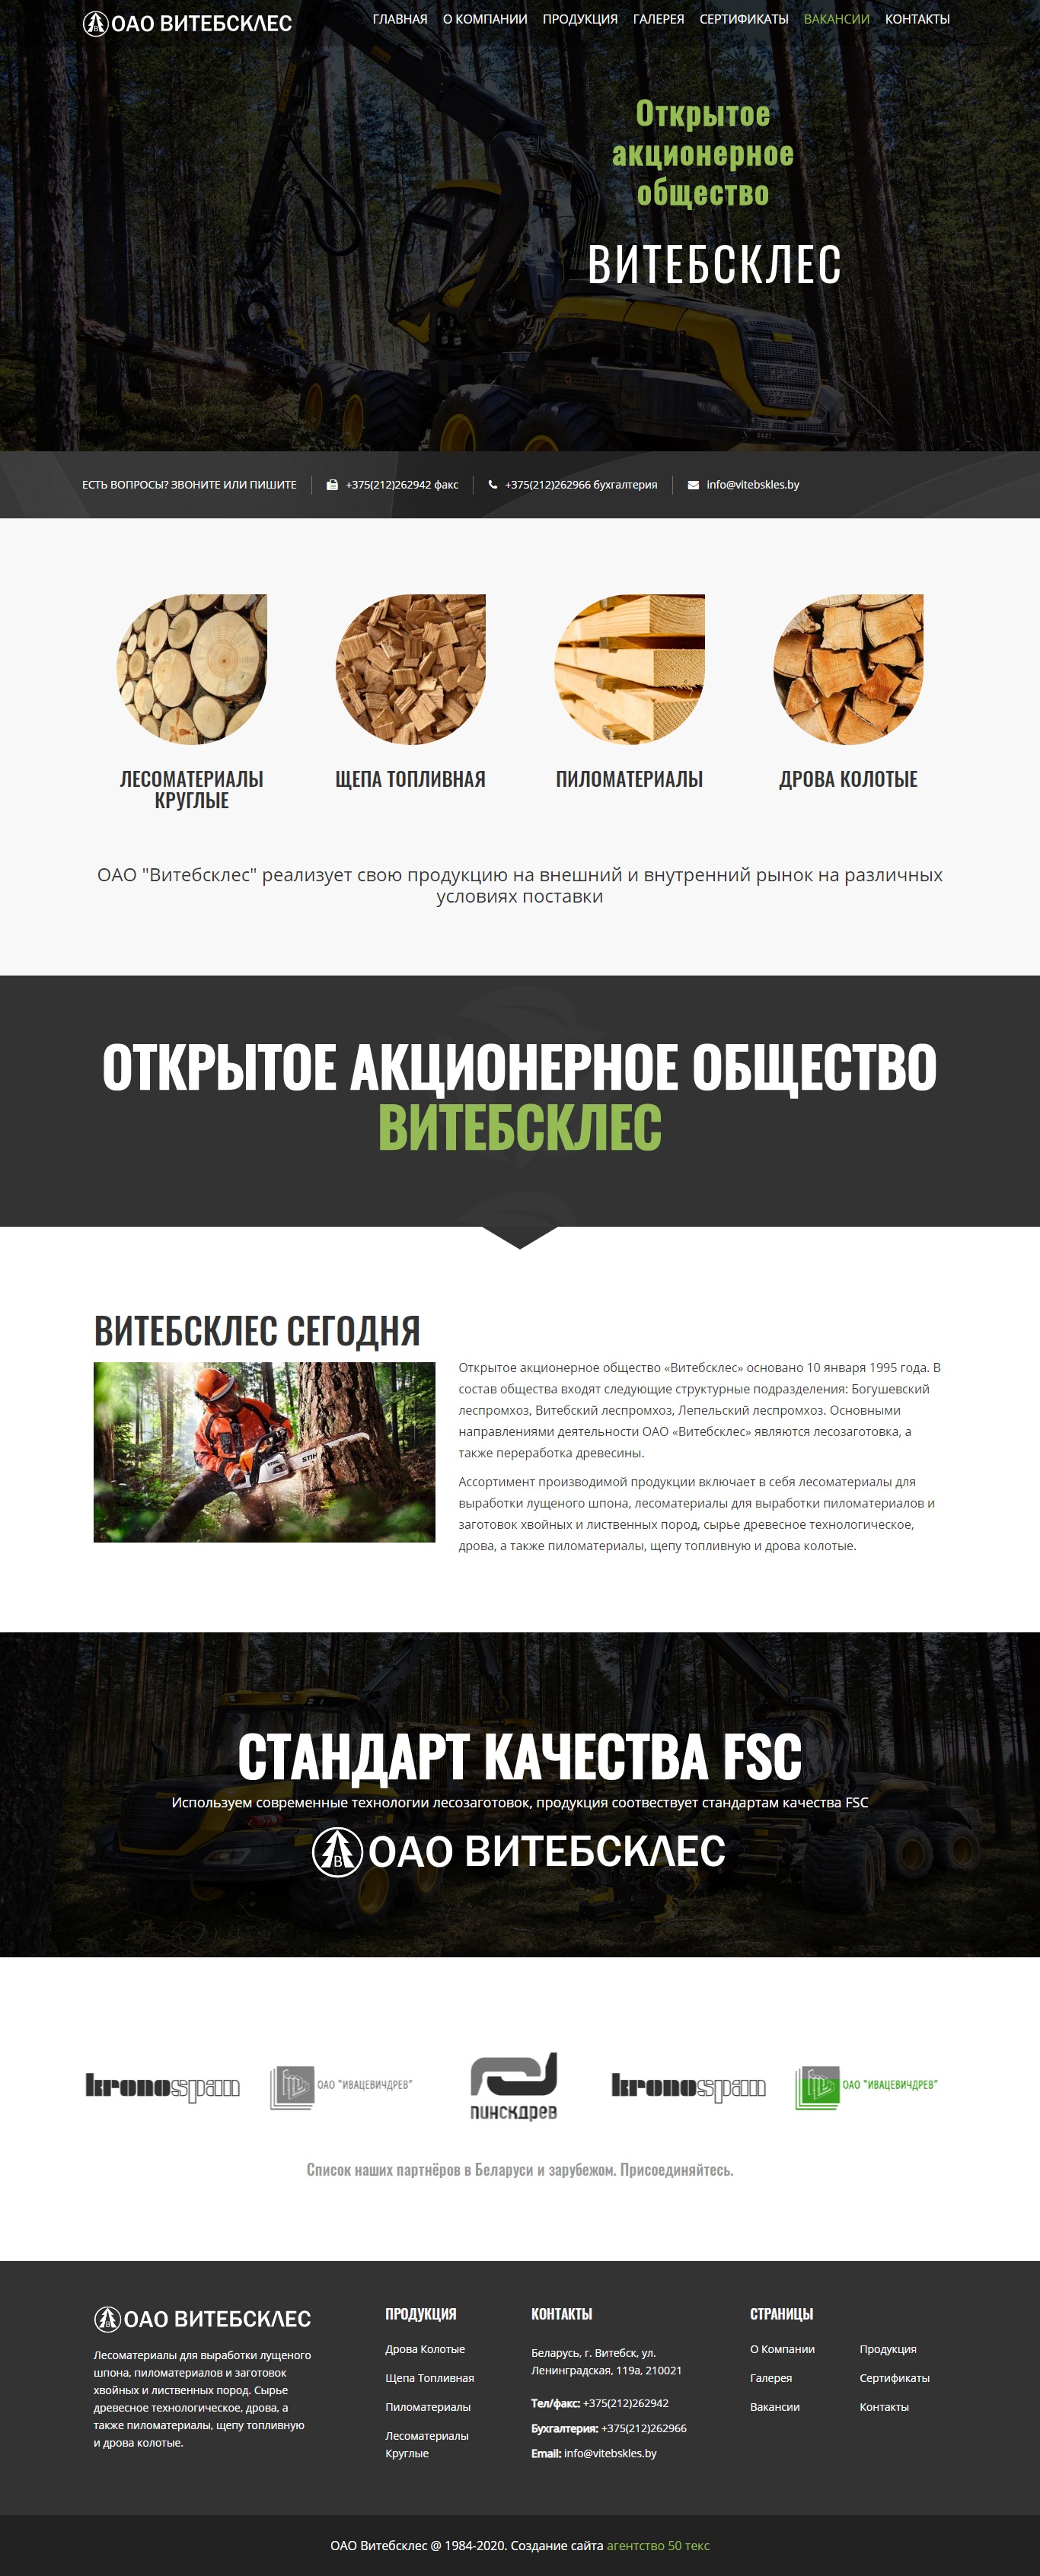 Создание корпоративного сайта для ОАО Витебсклес - разработка дизайна